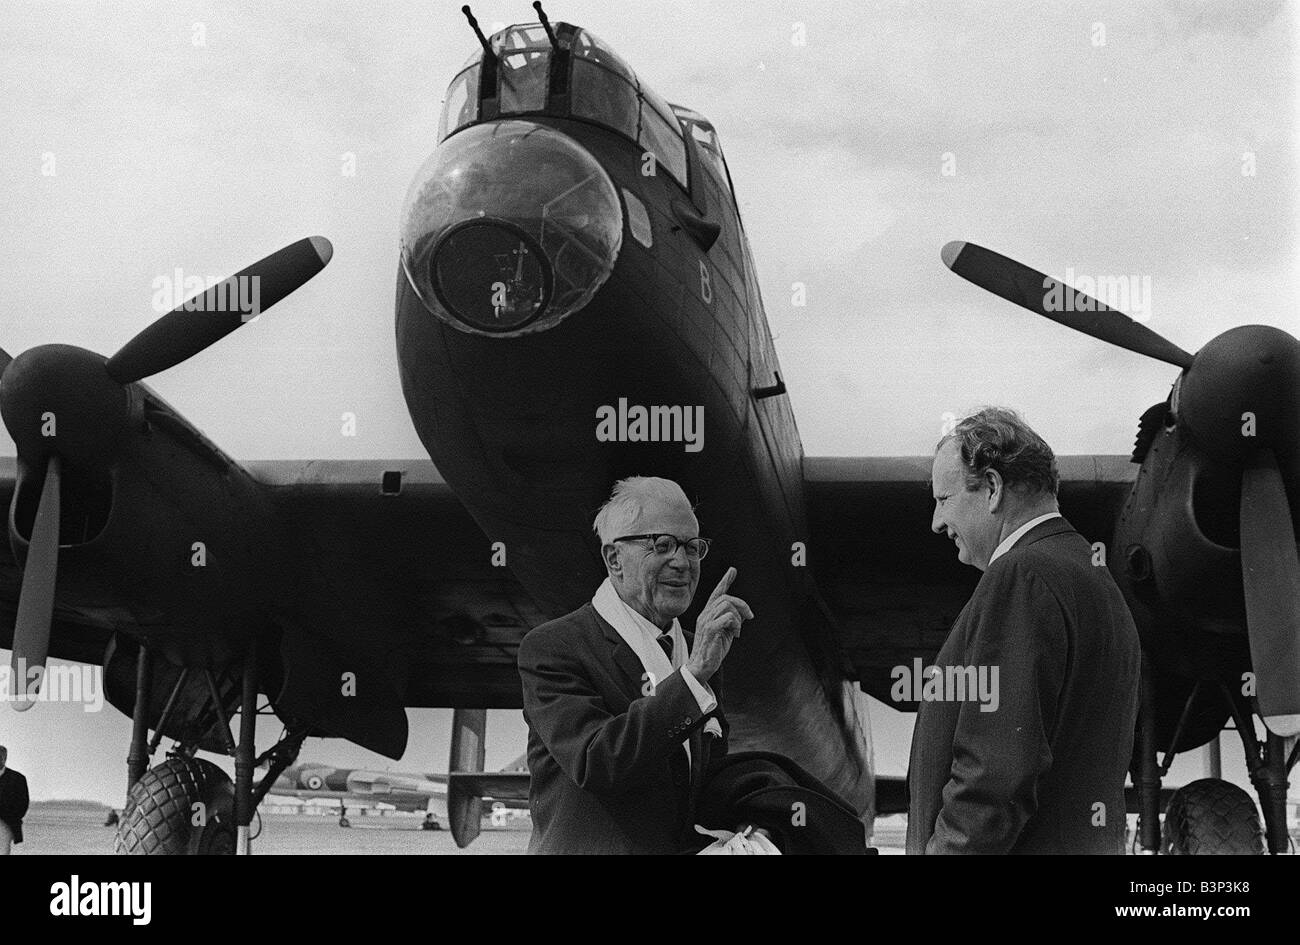 Dambuster Dr. Barnes Wallis Wallis der Ingenieur, der bekanntlich die springende Bombe, die halfen, um die deutschen Dämme entlang der Ruhr zu zerstören erstellt ein Kunststück später auf der Leinwand verewigt er ist hier abgebildet, im Gespräch mit Wing Commander RAB Learoyd unter den wachsamen Augen einer Avro Lancaster Bomber während der RAF Battle of Britain Memorial Flight 1968 Stockfoto